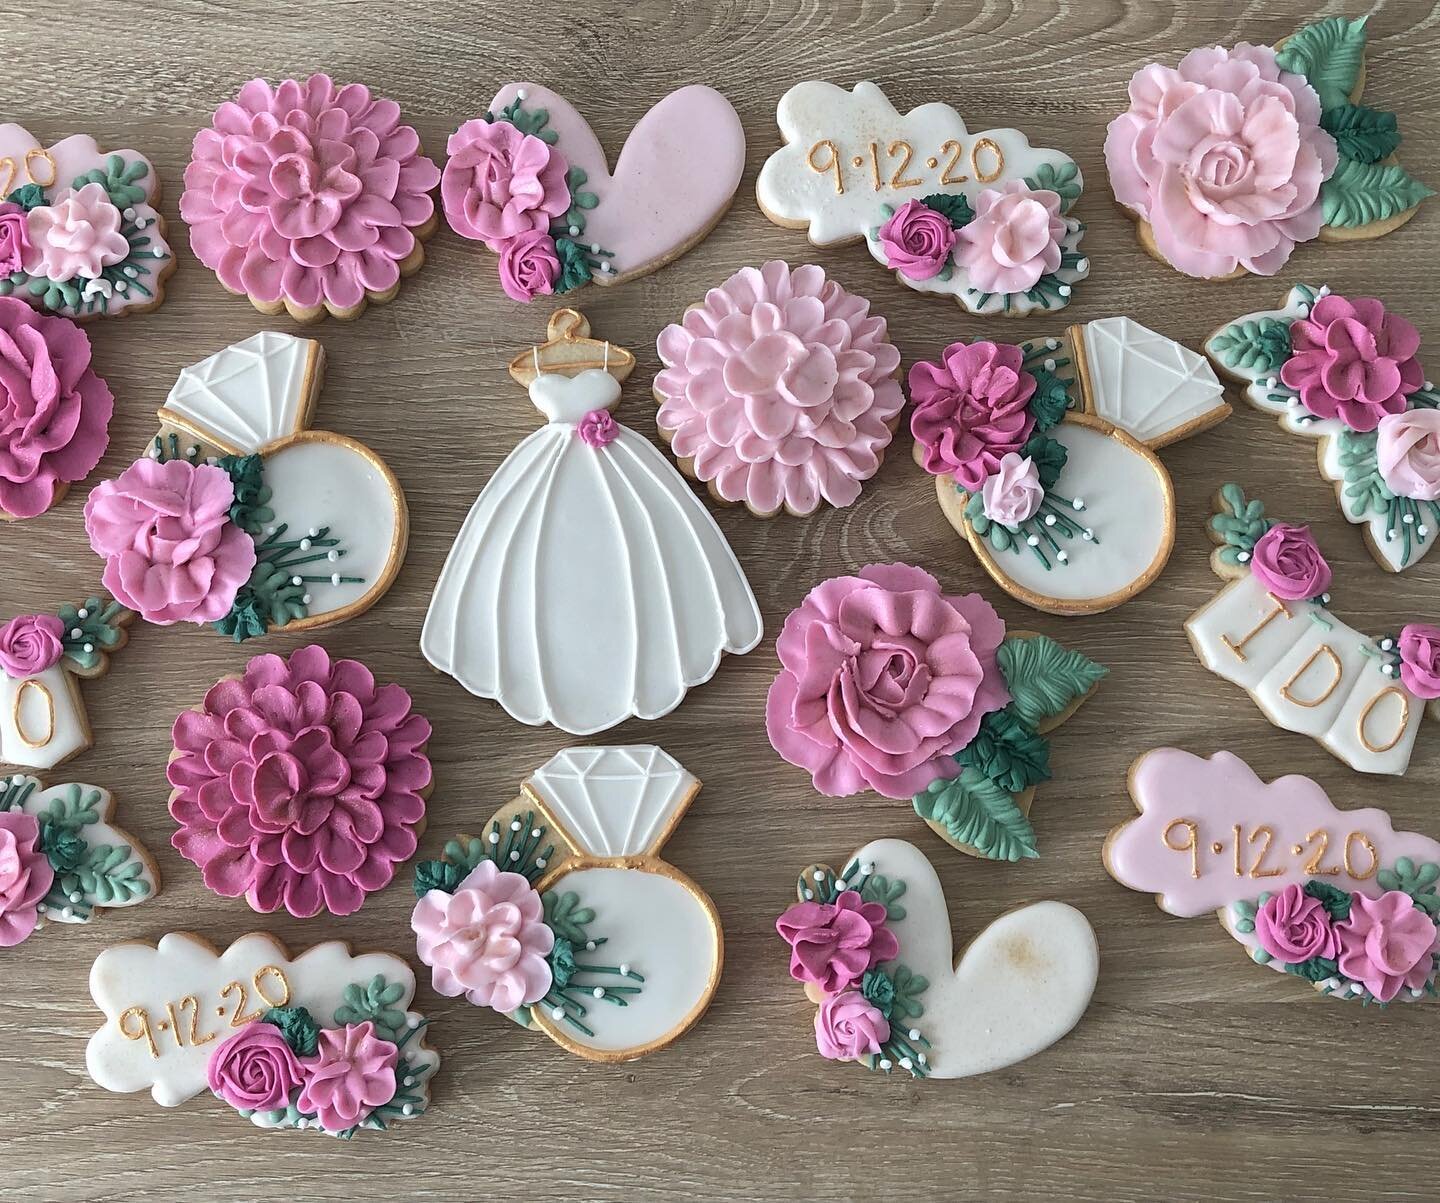 Fun florals for the bride-to-be 🌸🌺🌹 
#bridalshowercookies #cookiesofinstagram #kaleidacuts #bobbiscutters 
#flowercookies #allthepinks #bridetobe #weddingshowercookies